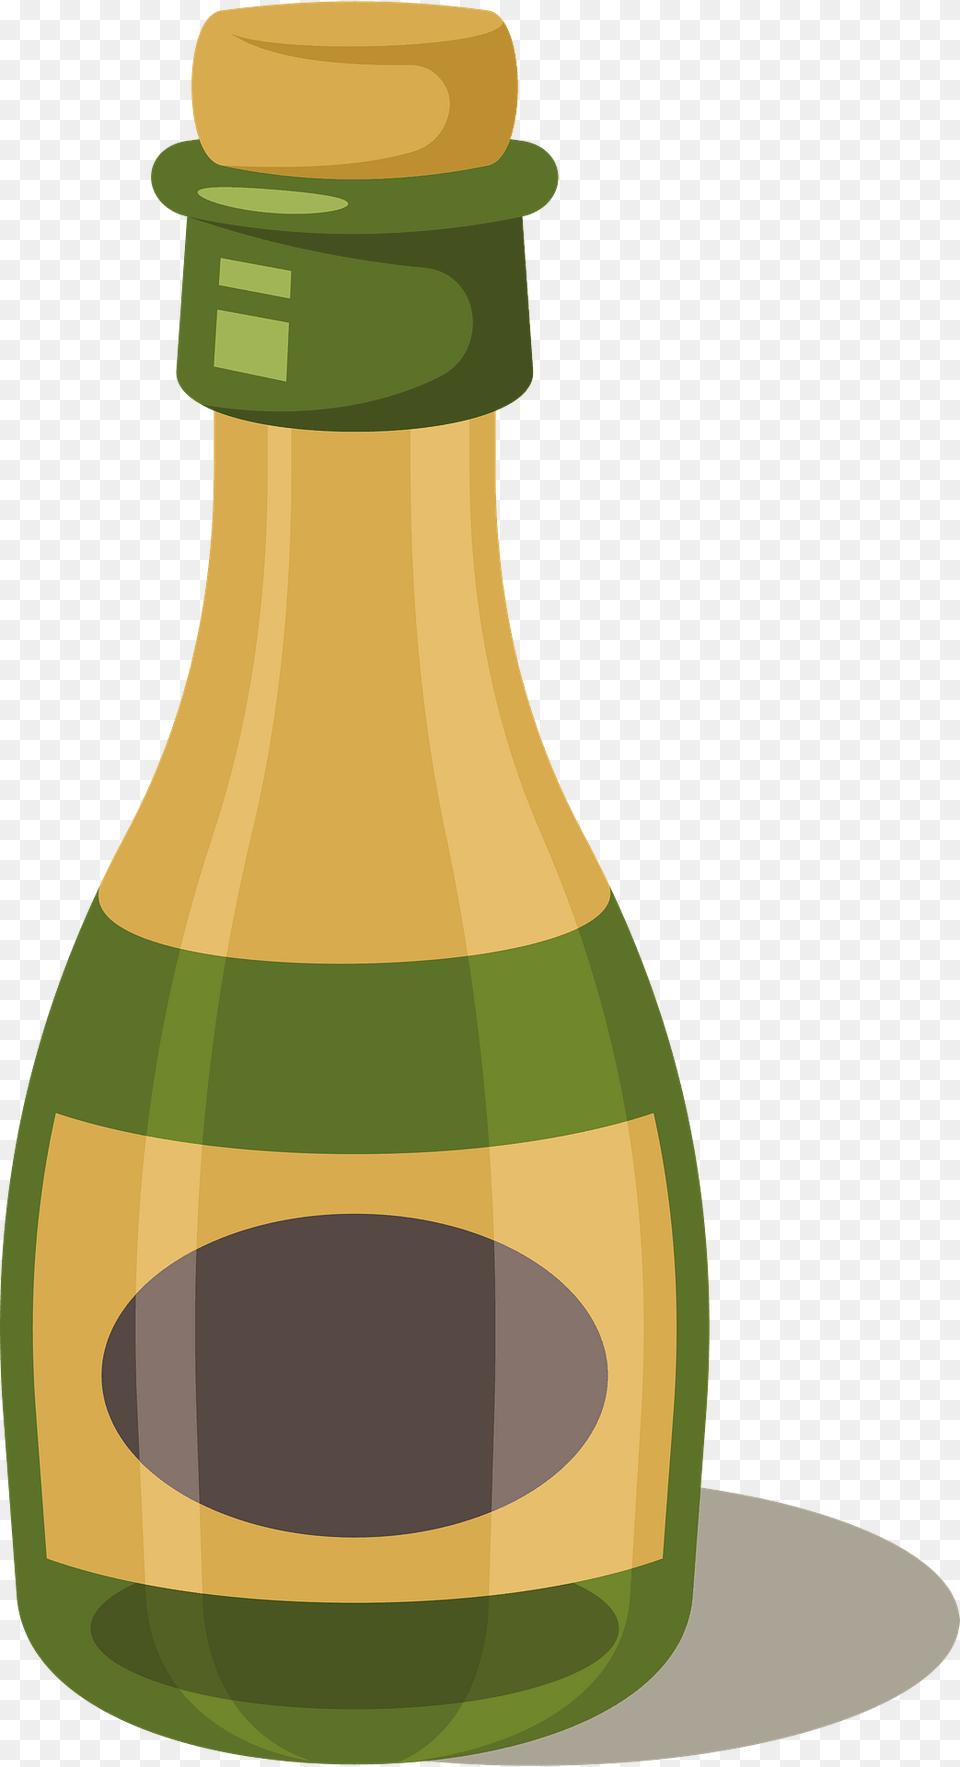 Old Bottle Clipart, Alcohol, Beer, Beverage, Food Free Transparent Png